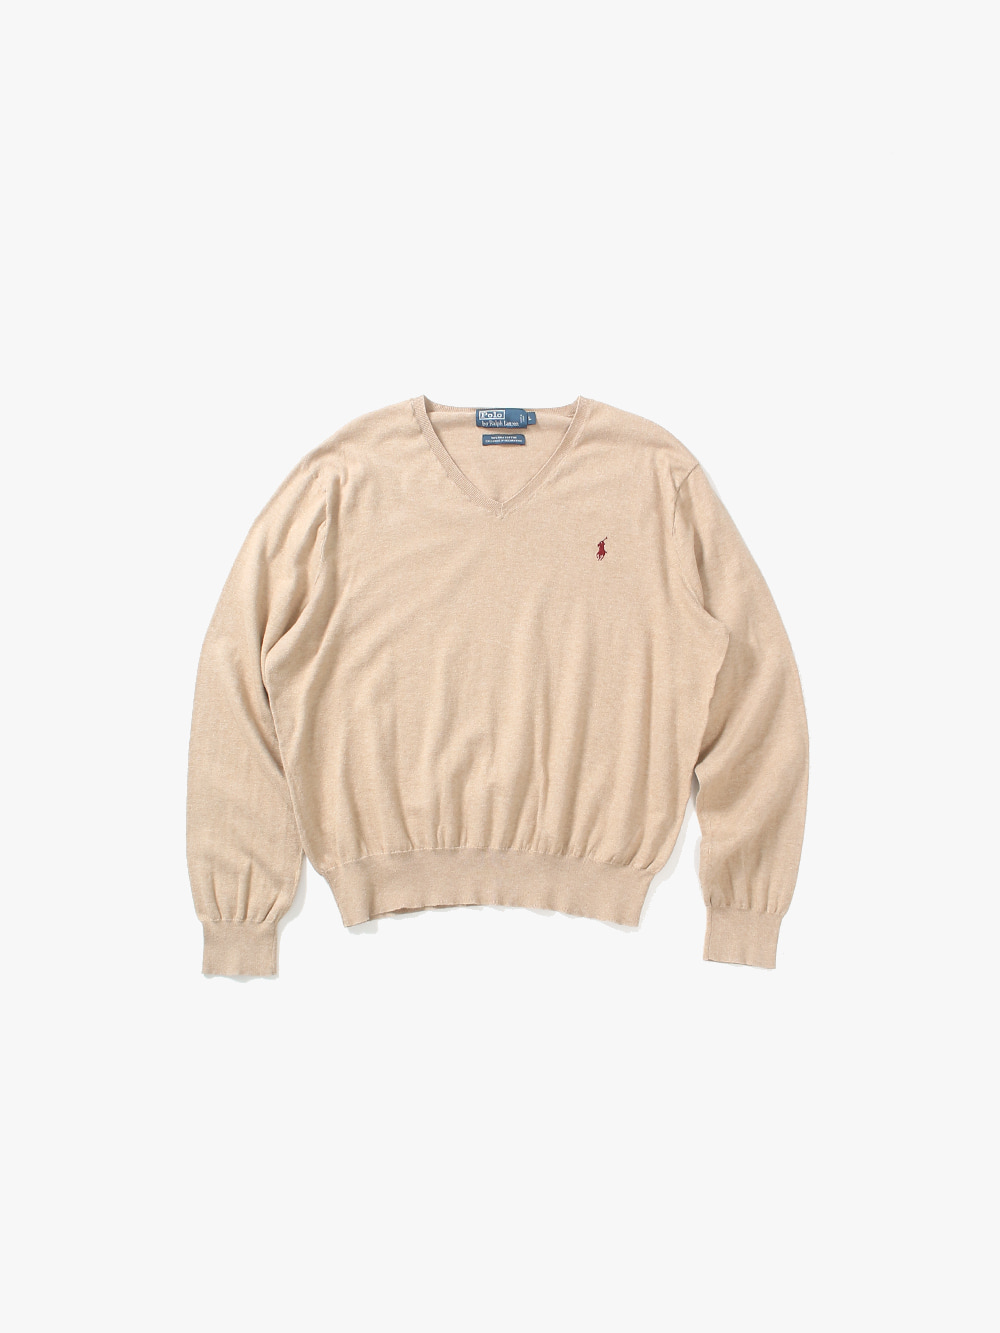 [ L ] Polo Ralph Lauren Sweater (6283)